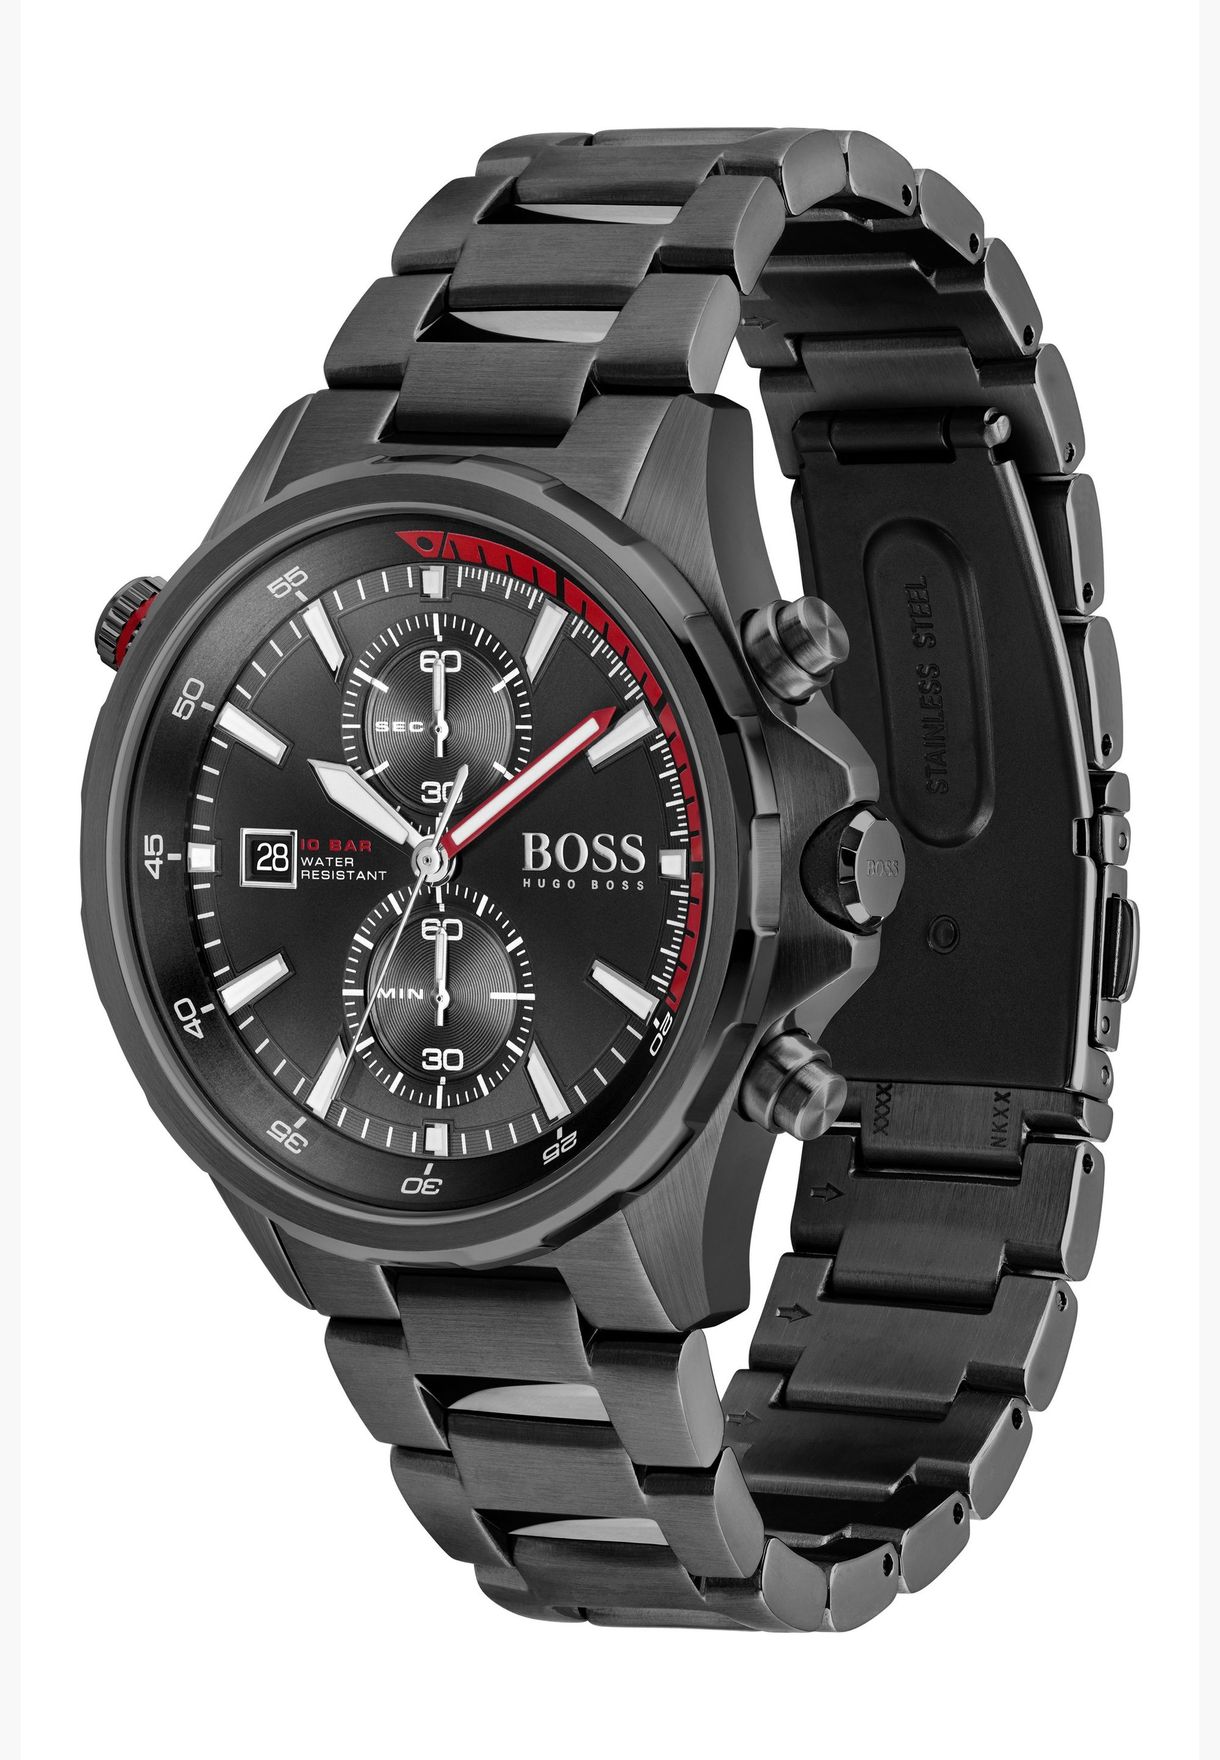 Hugo Boss GLOBETROTTER Stainless Steel Watch for men - 1513825